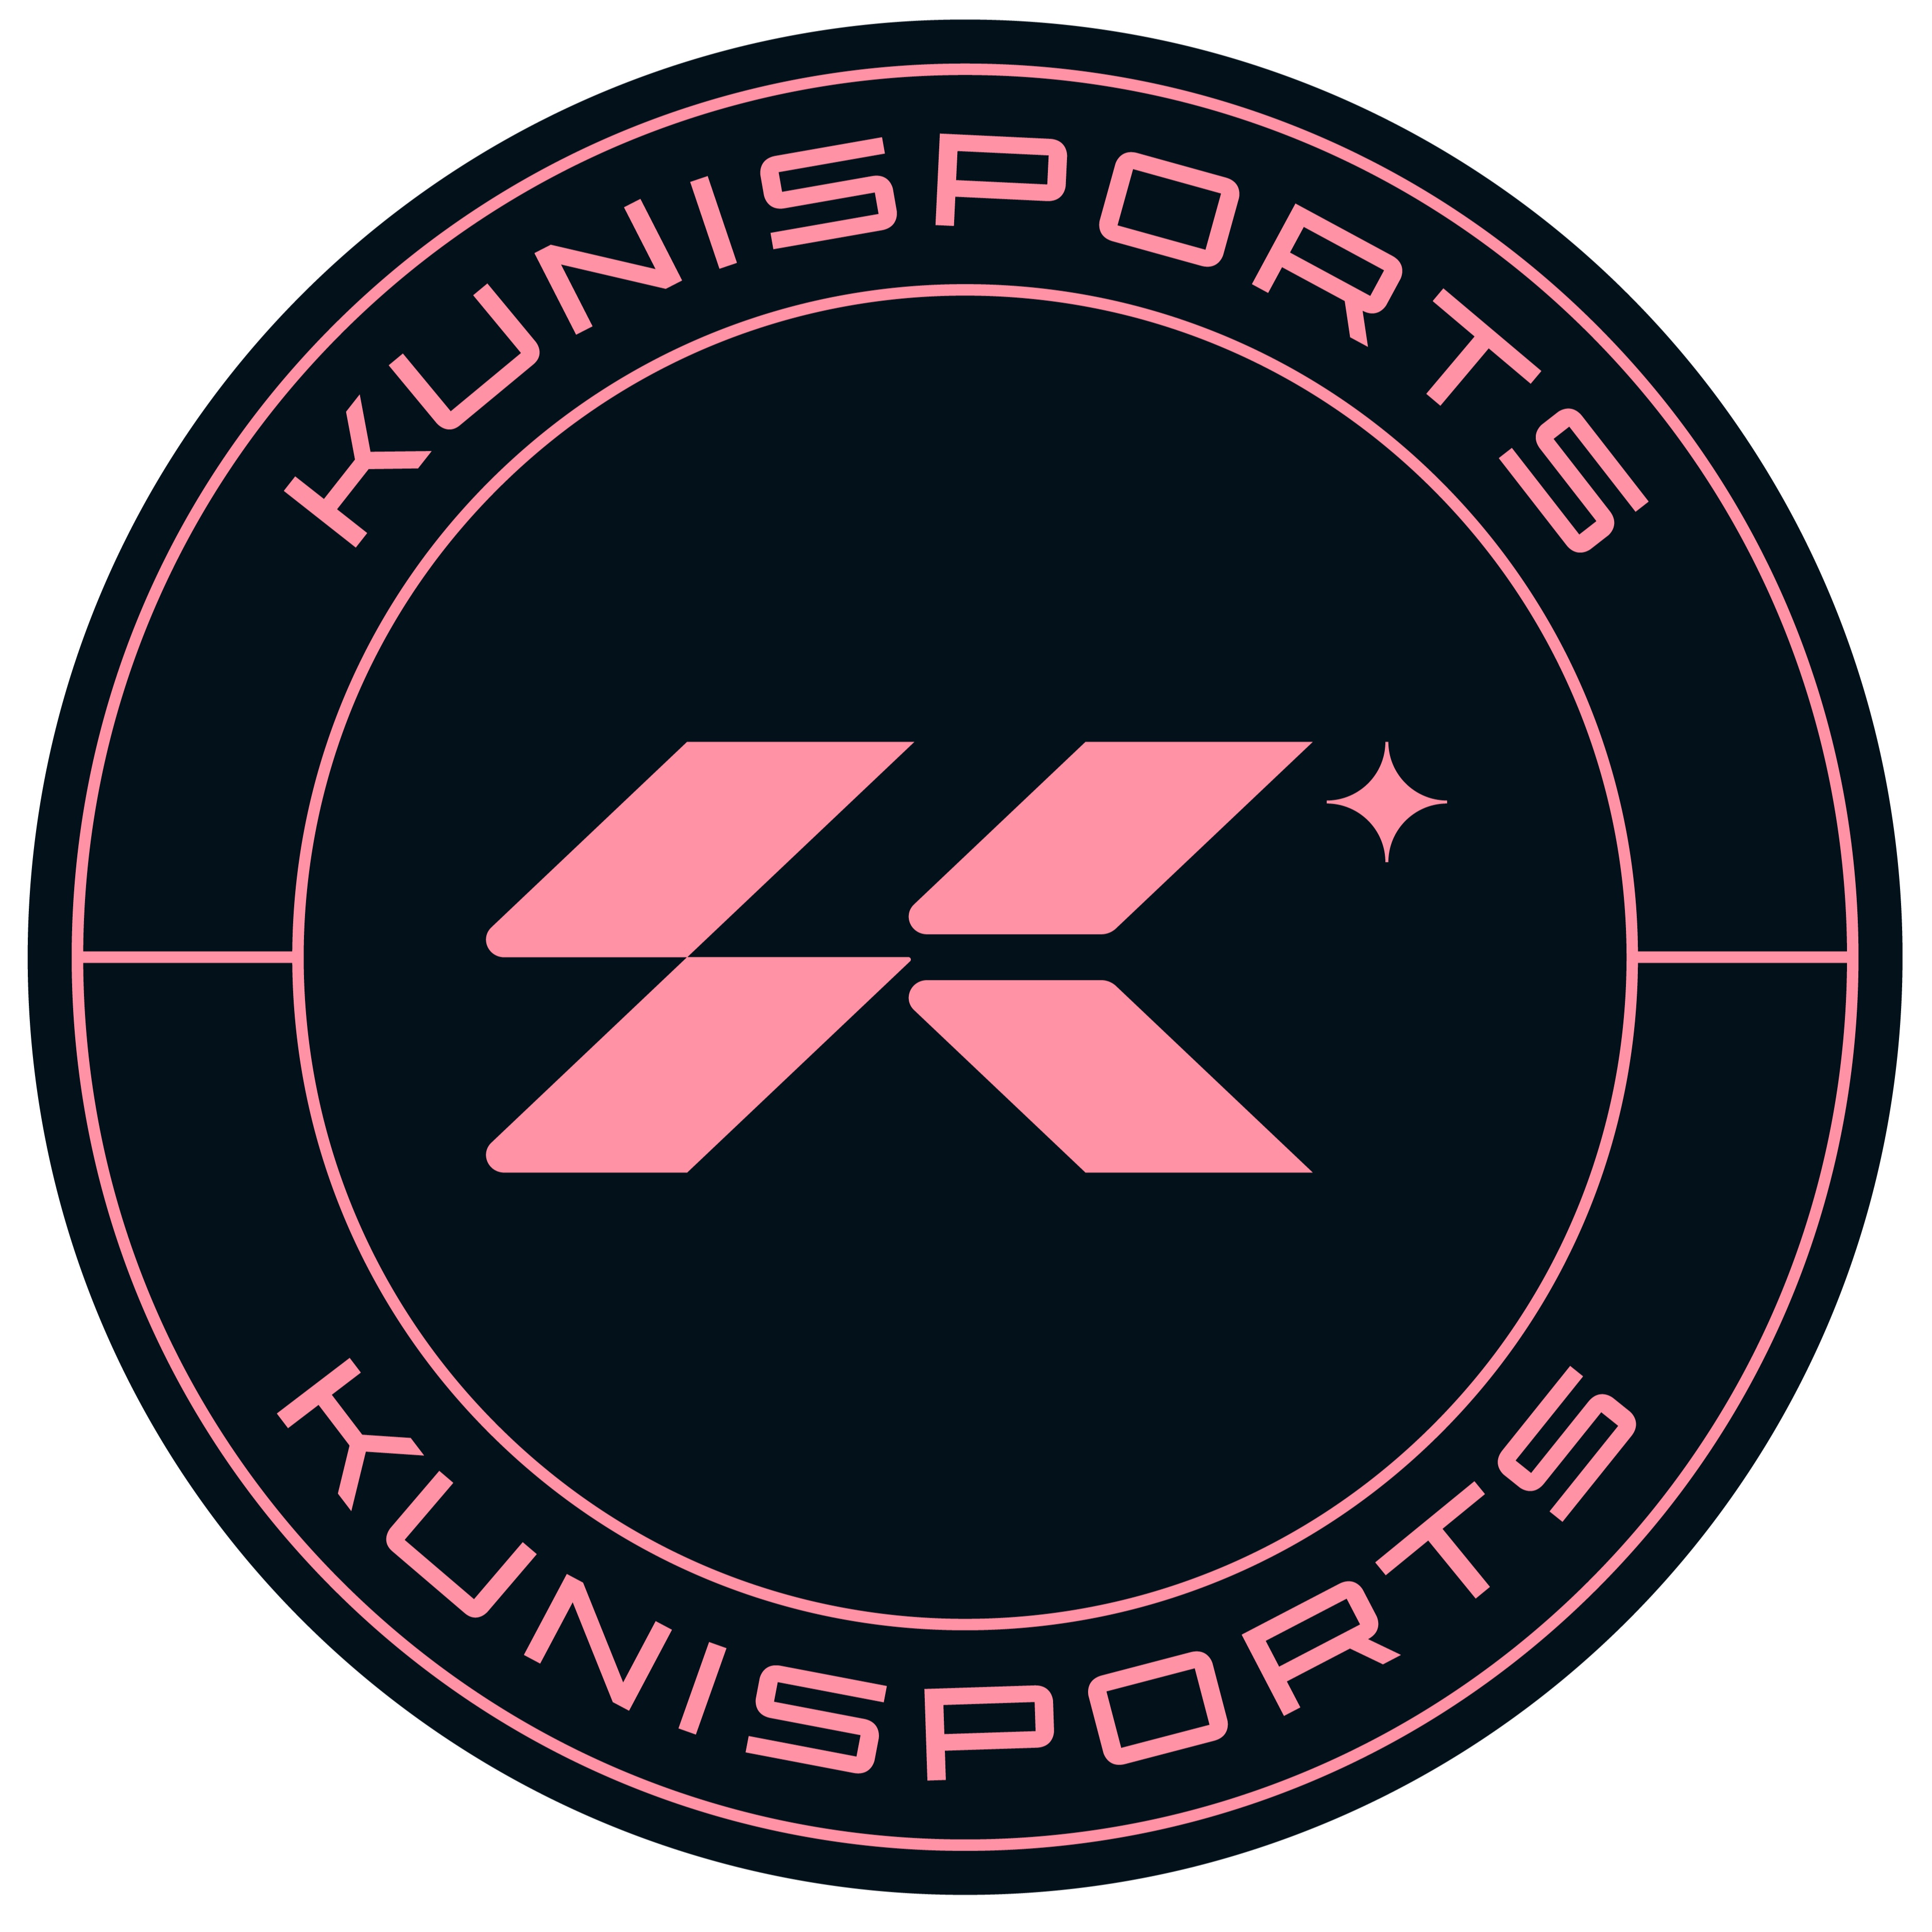 Escudo del Kunisports Sub 12